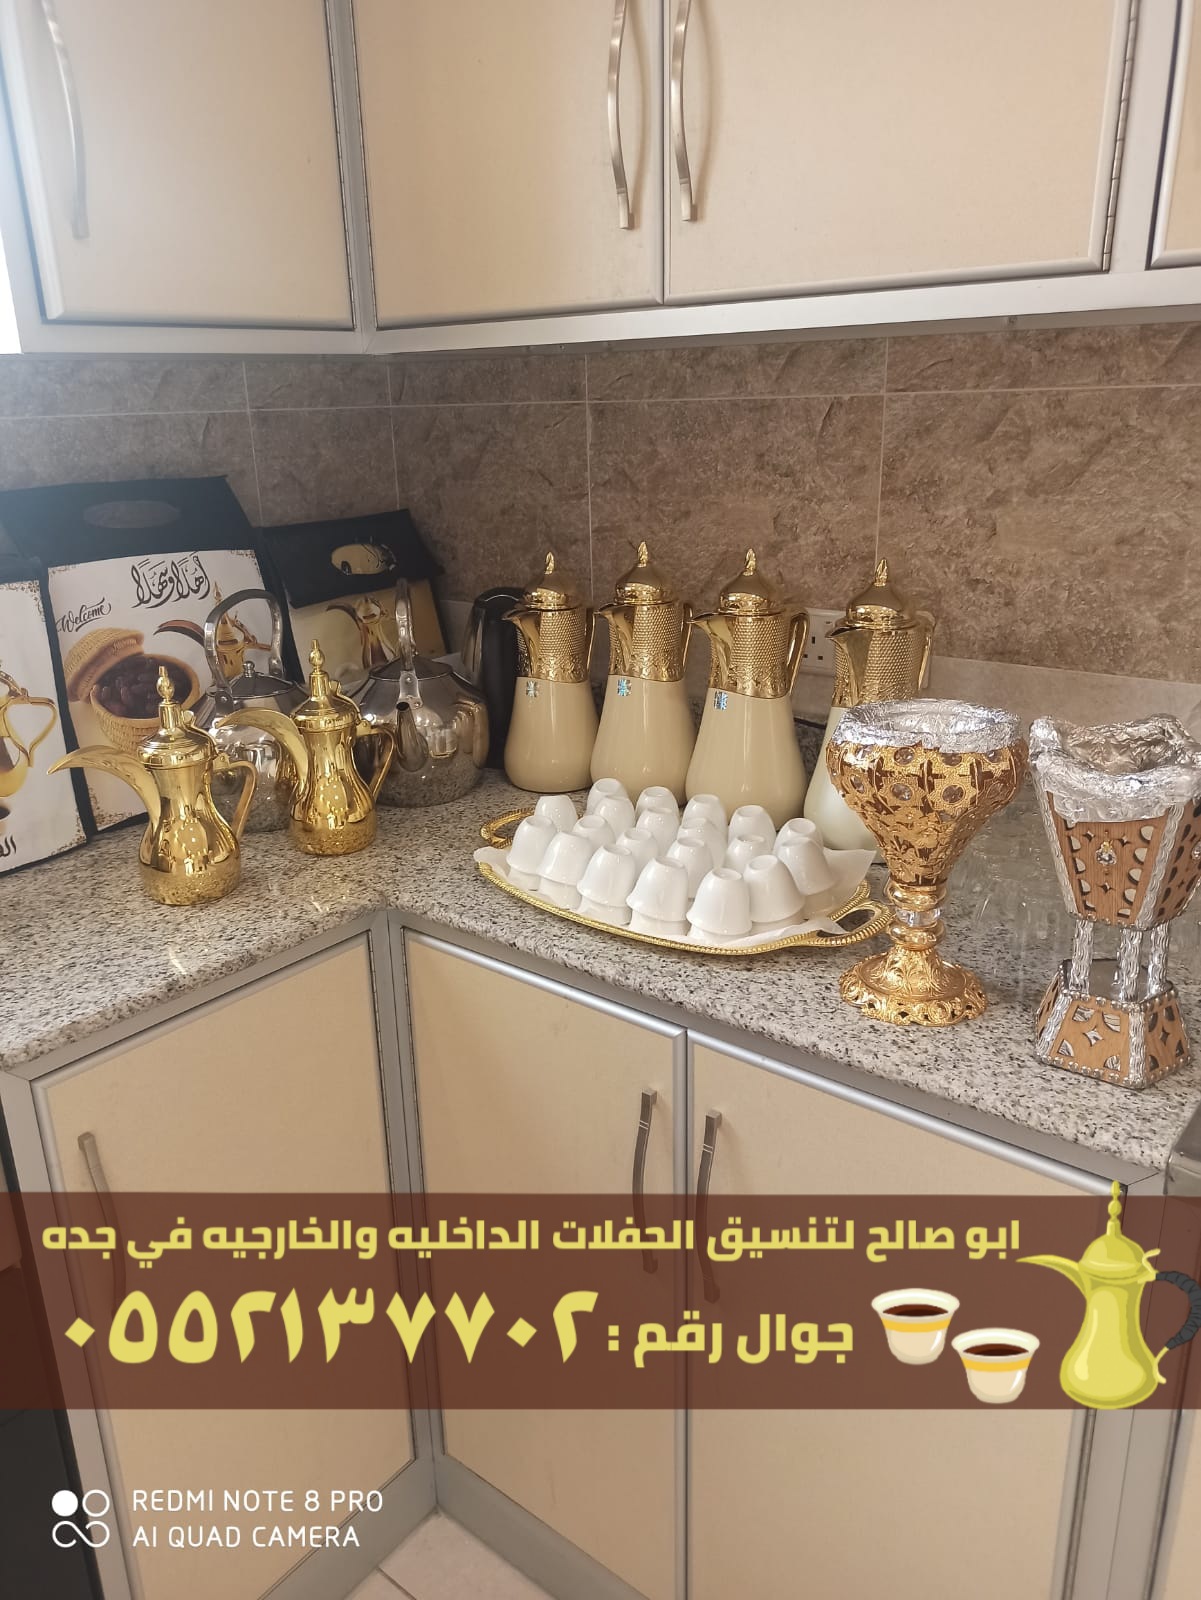 صبابين ومباشرين قهوة في جدة , 0552137702 P_2371x6q701